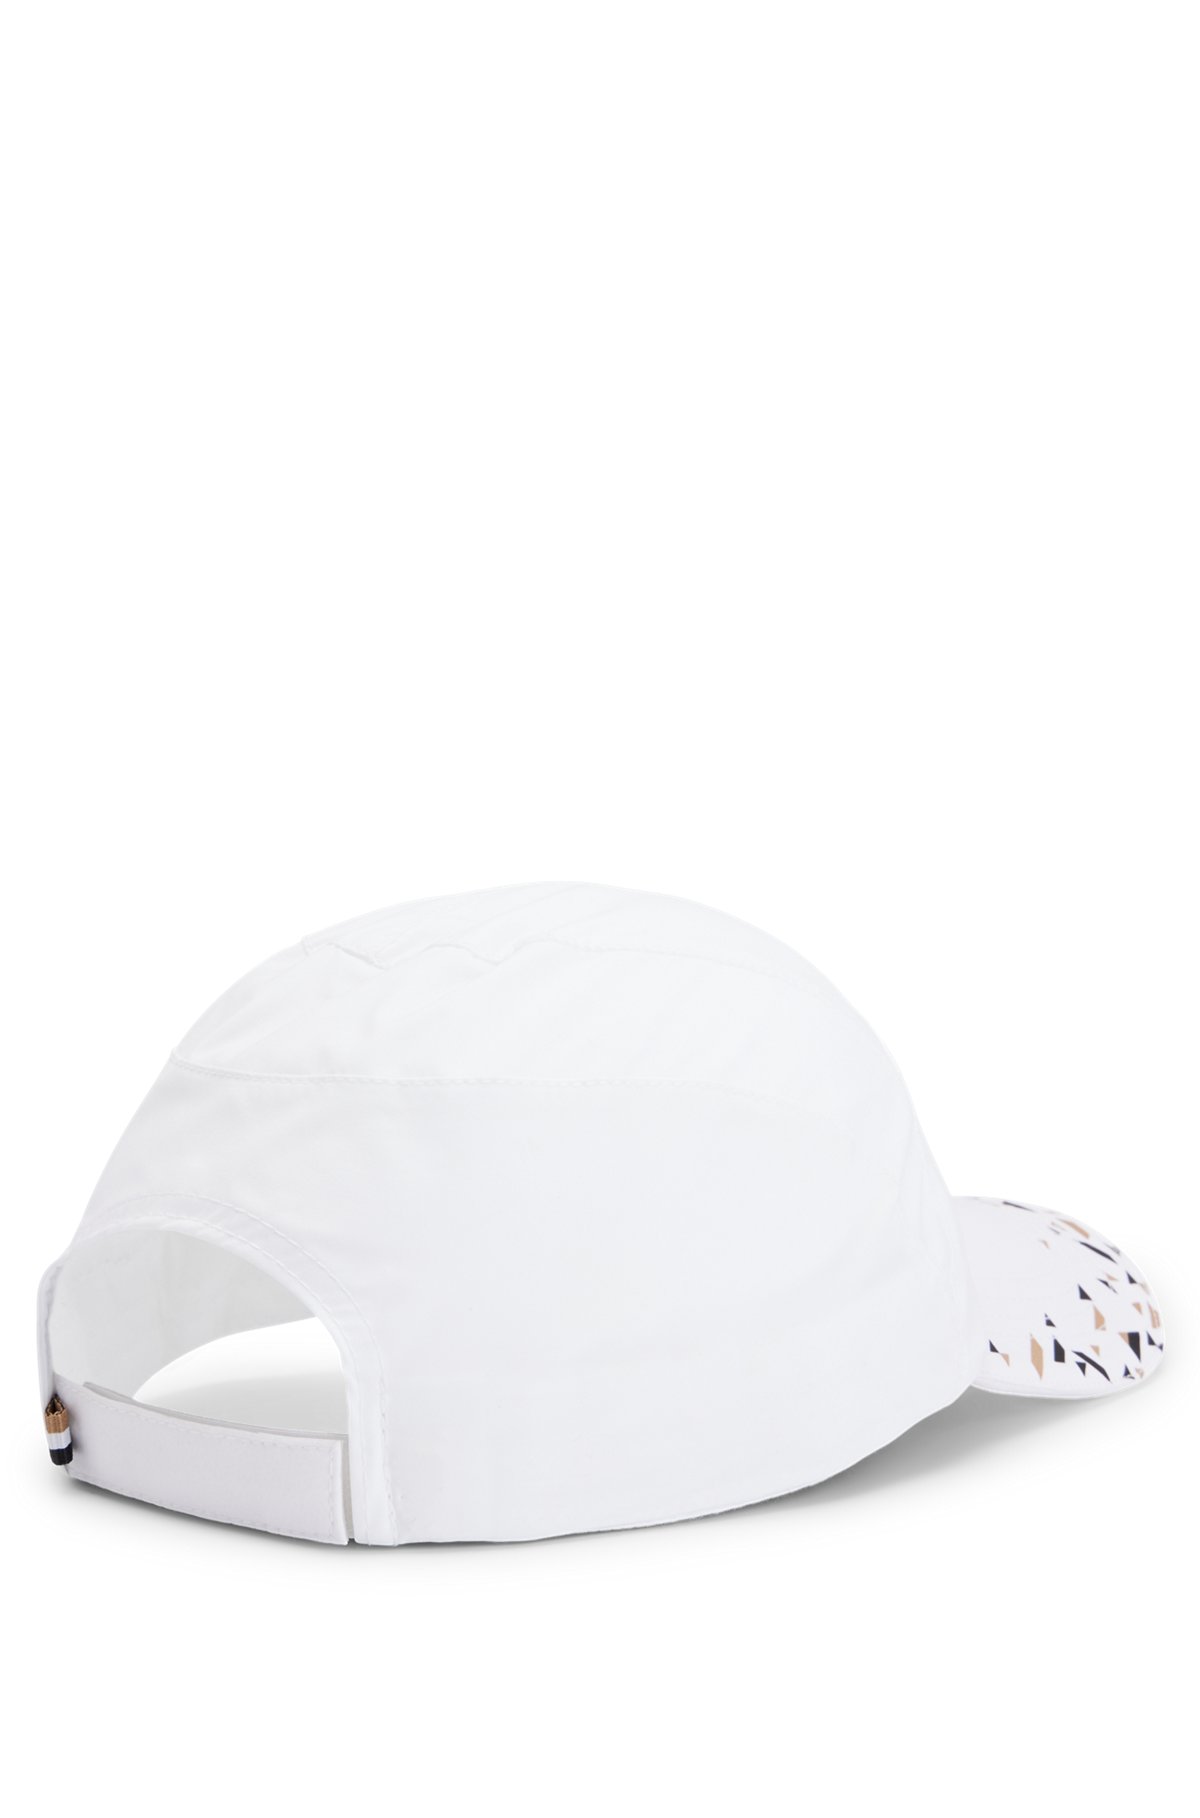 BOSS x Matteo Berrettini verstellbare Cap aus Nylon mit Print, Weiß